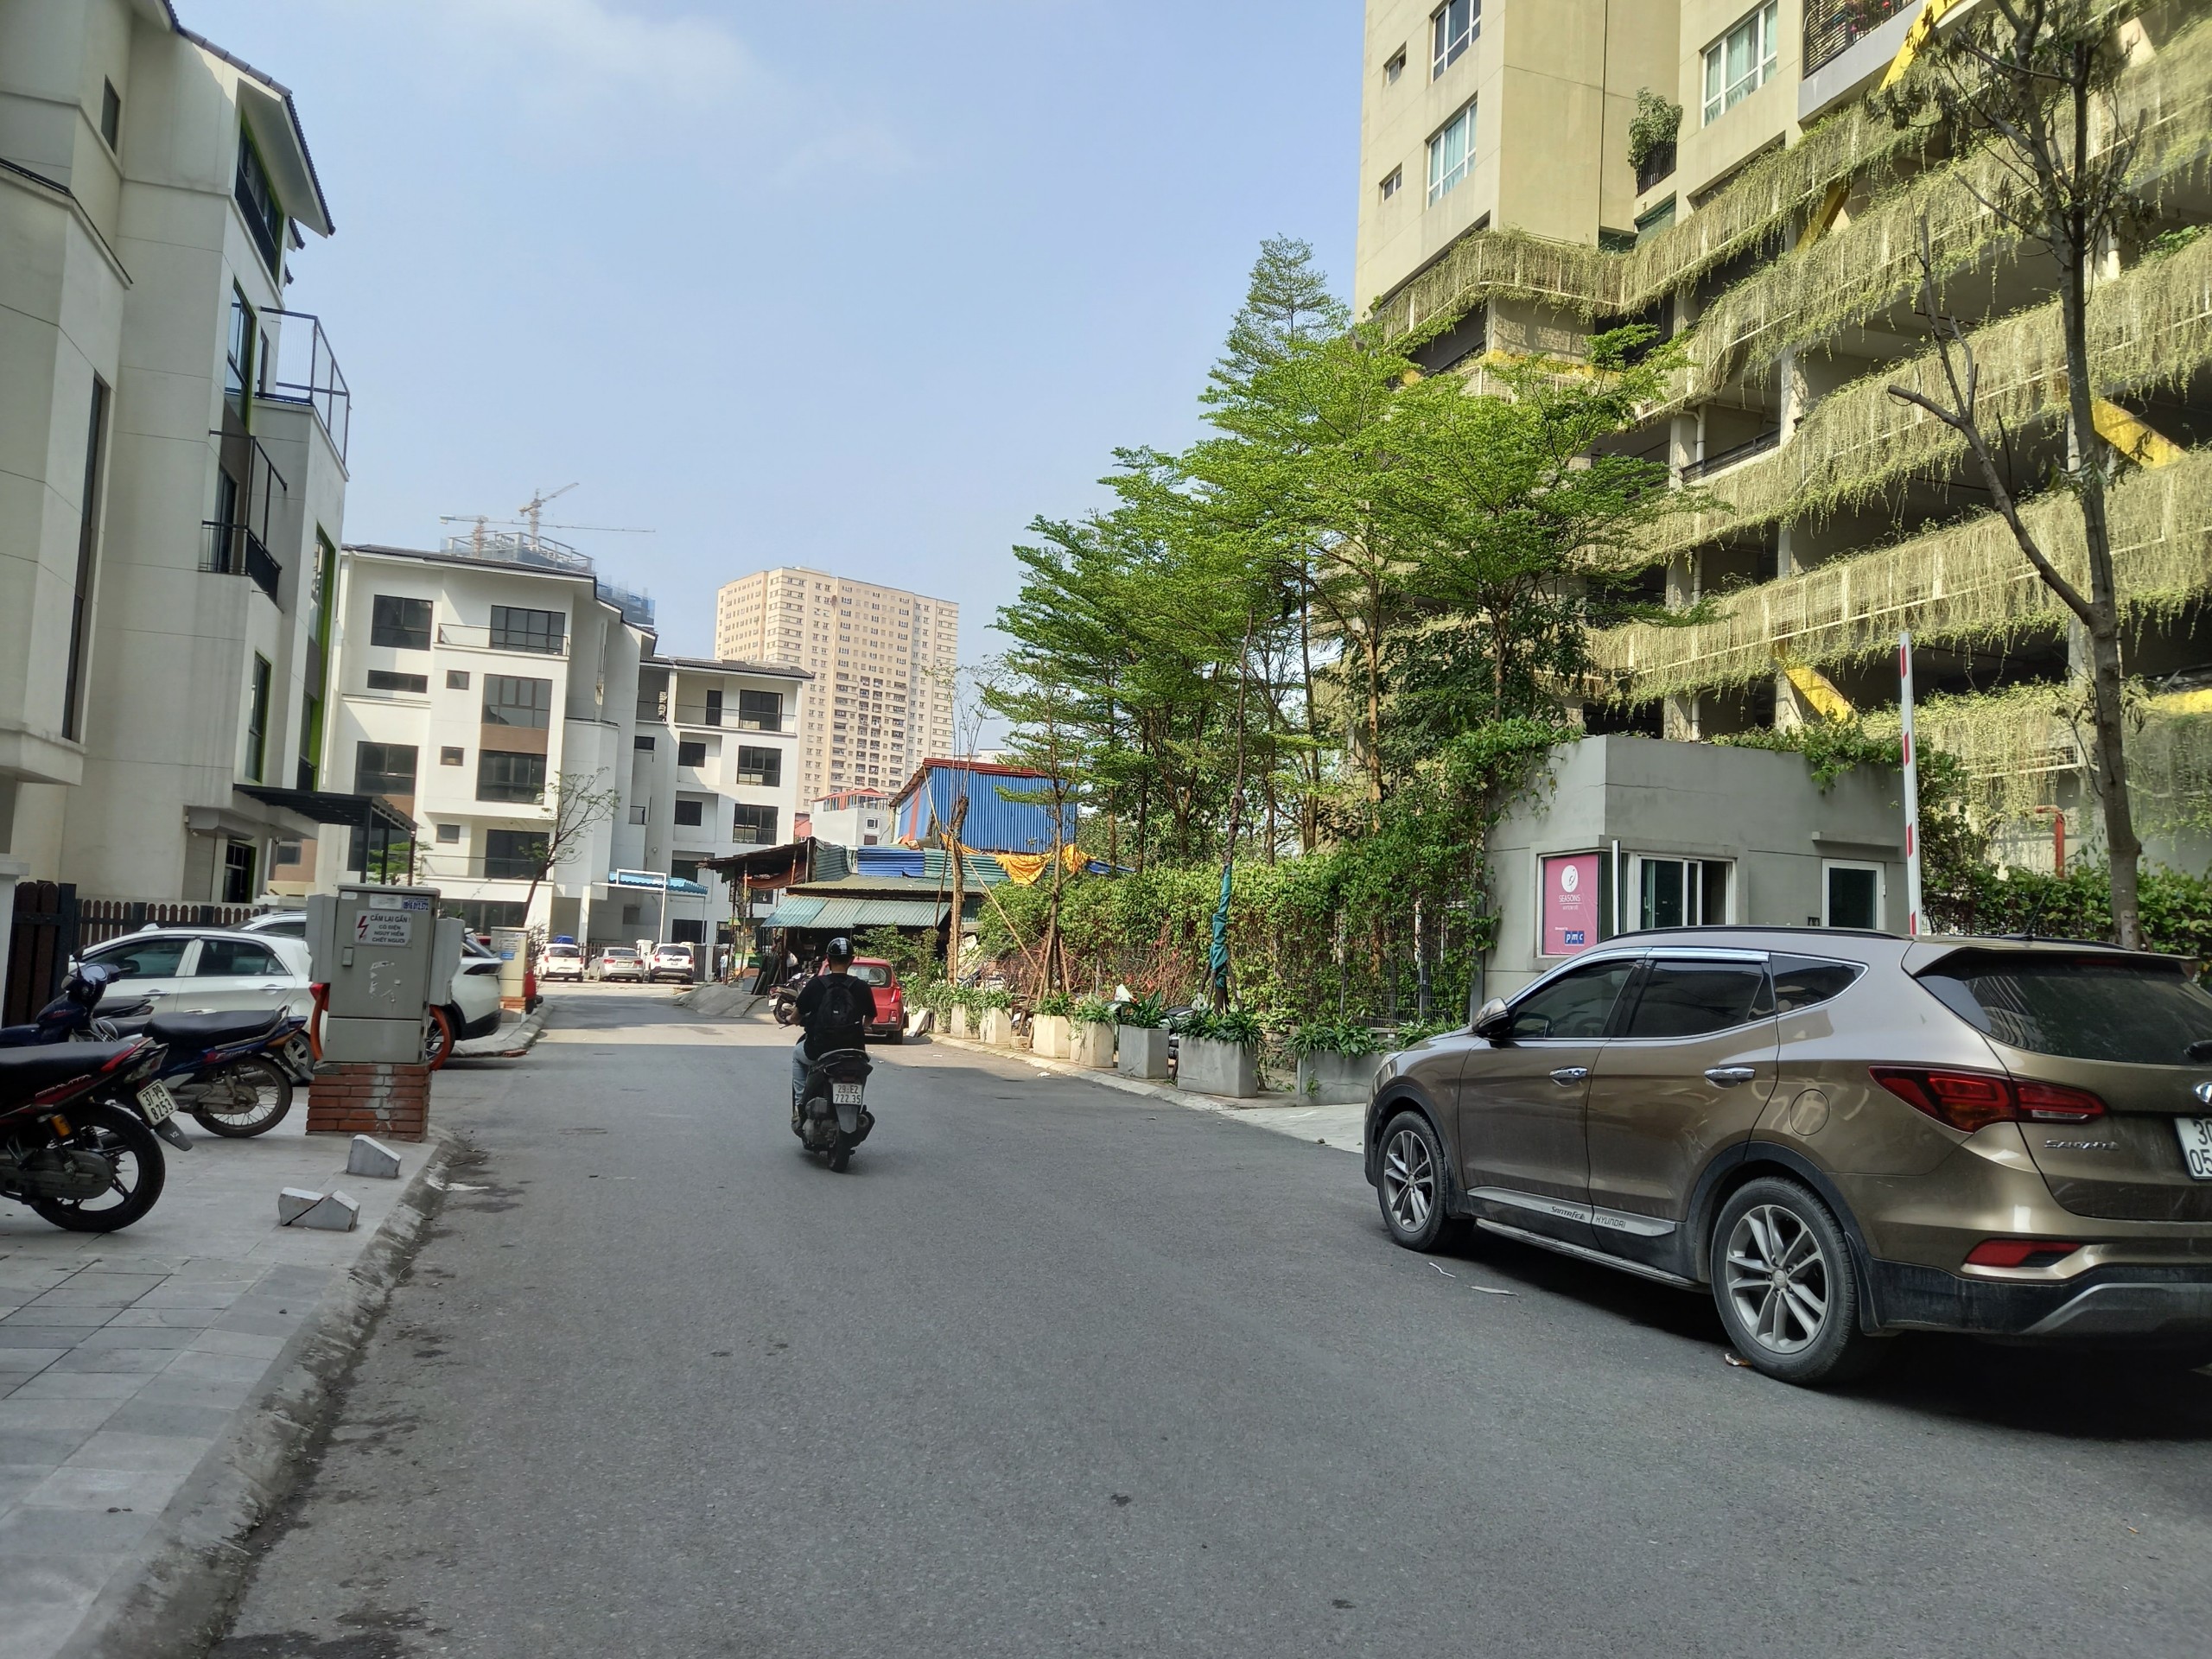 Bán lô đất 69m2, MT 5m trên đường Trung Văn, Hà Nội, giá 7.5 tỷ - LH: 0971446988